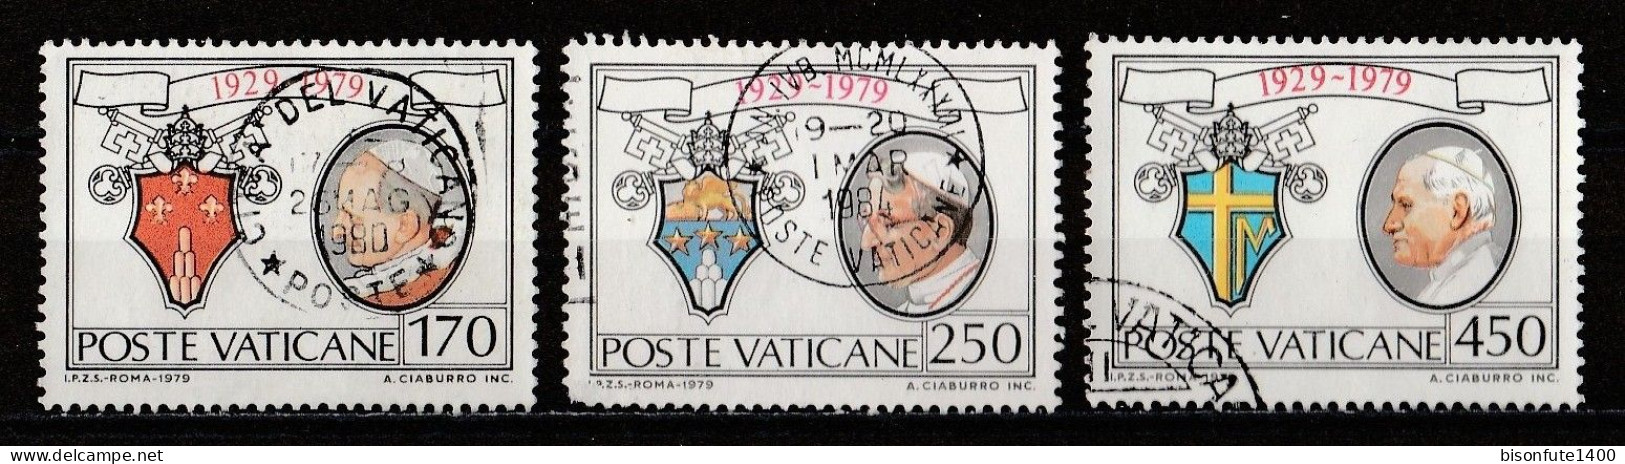 Vatican 1979 : Timbres Yvert & Tellier N° 678 - 679 - 680 - 681 - 682 - 683 Et 684 Oblitérés. - Oblitérés